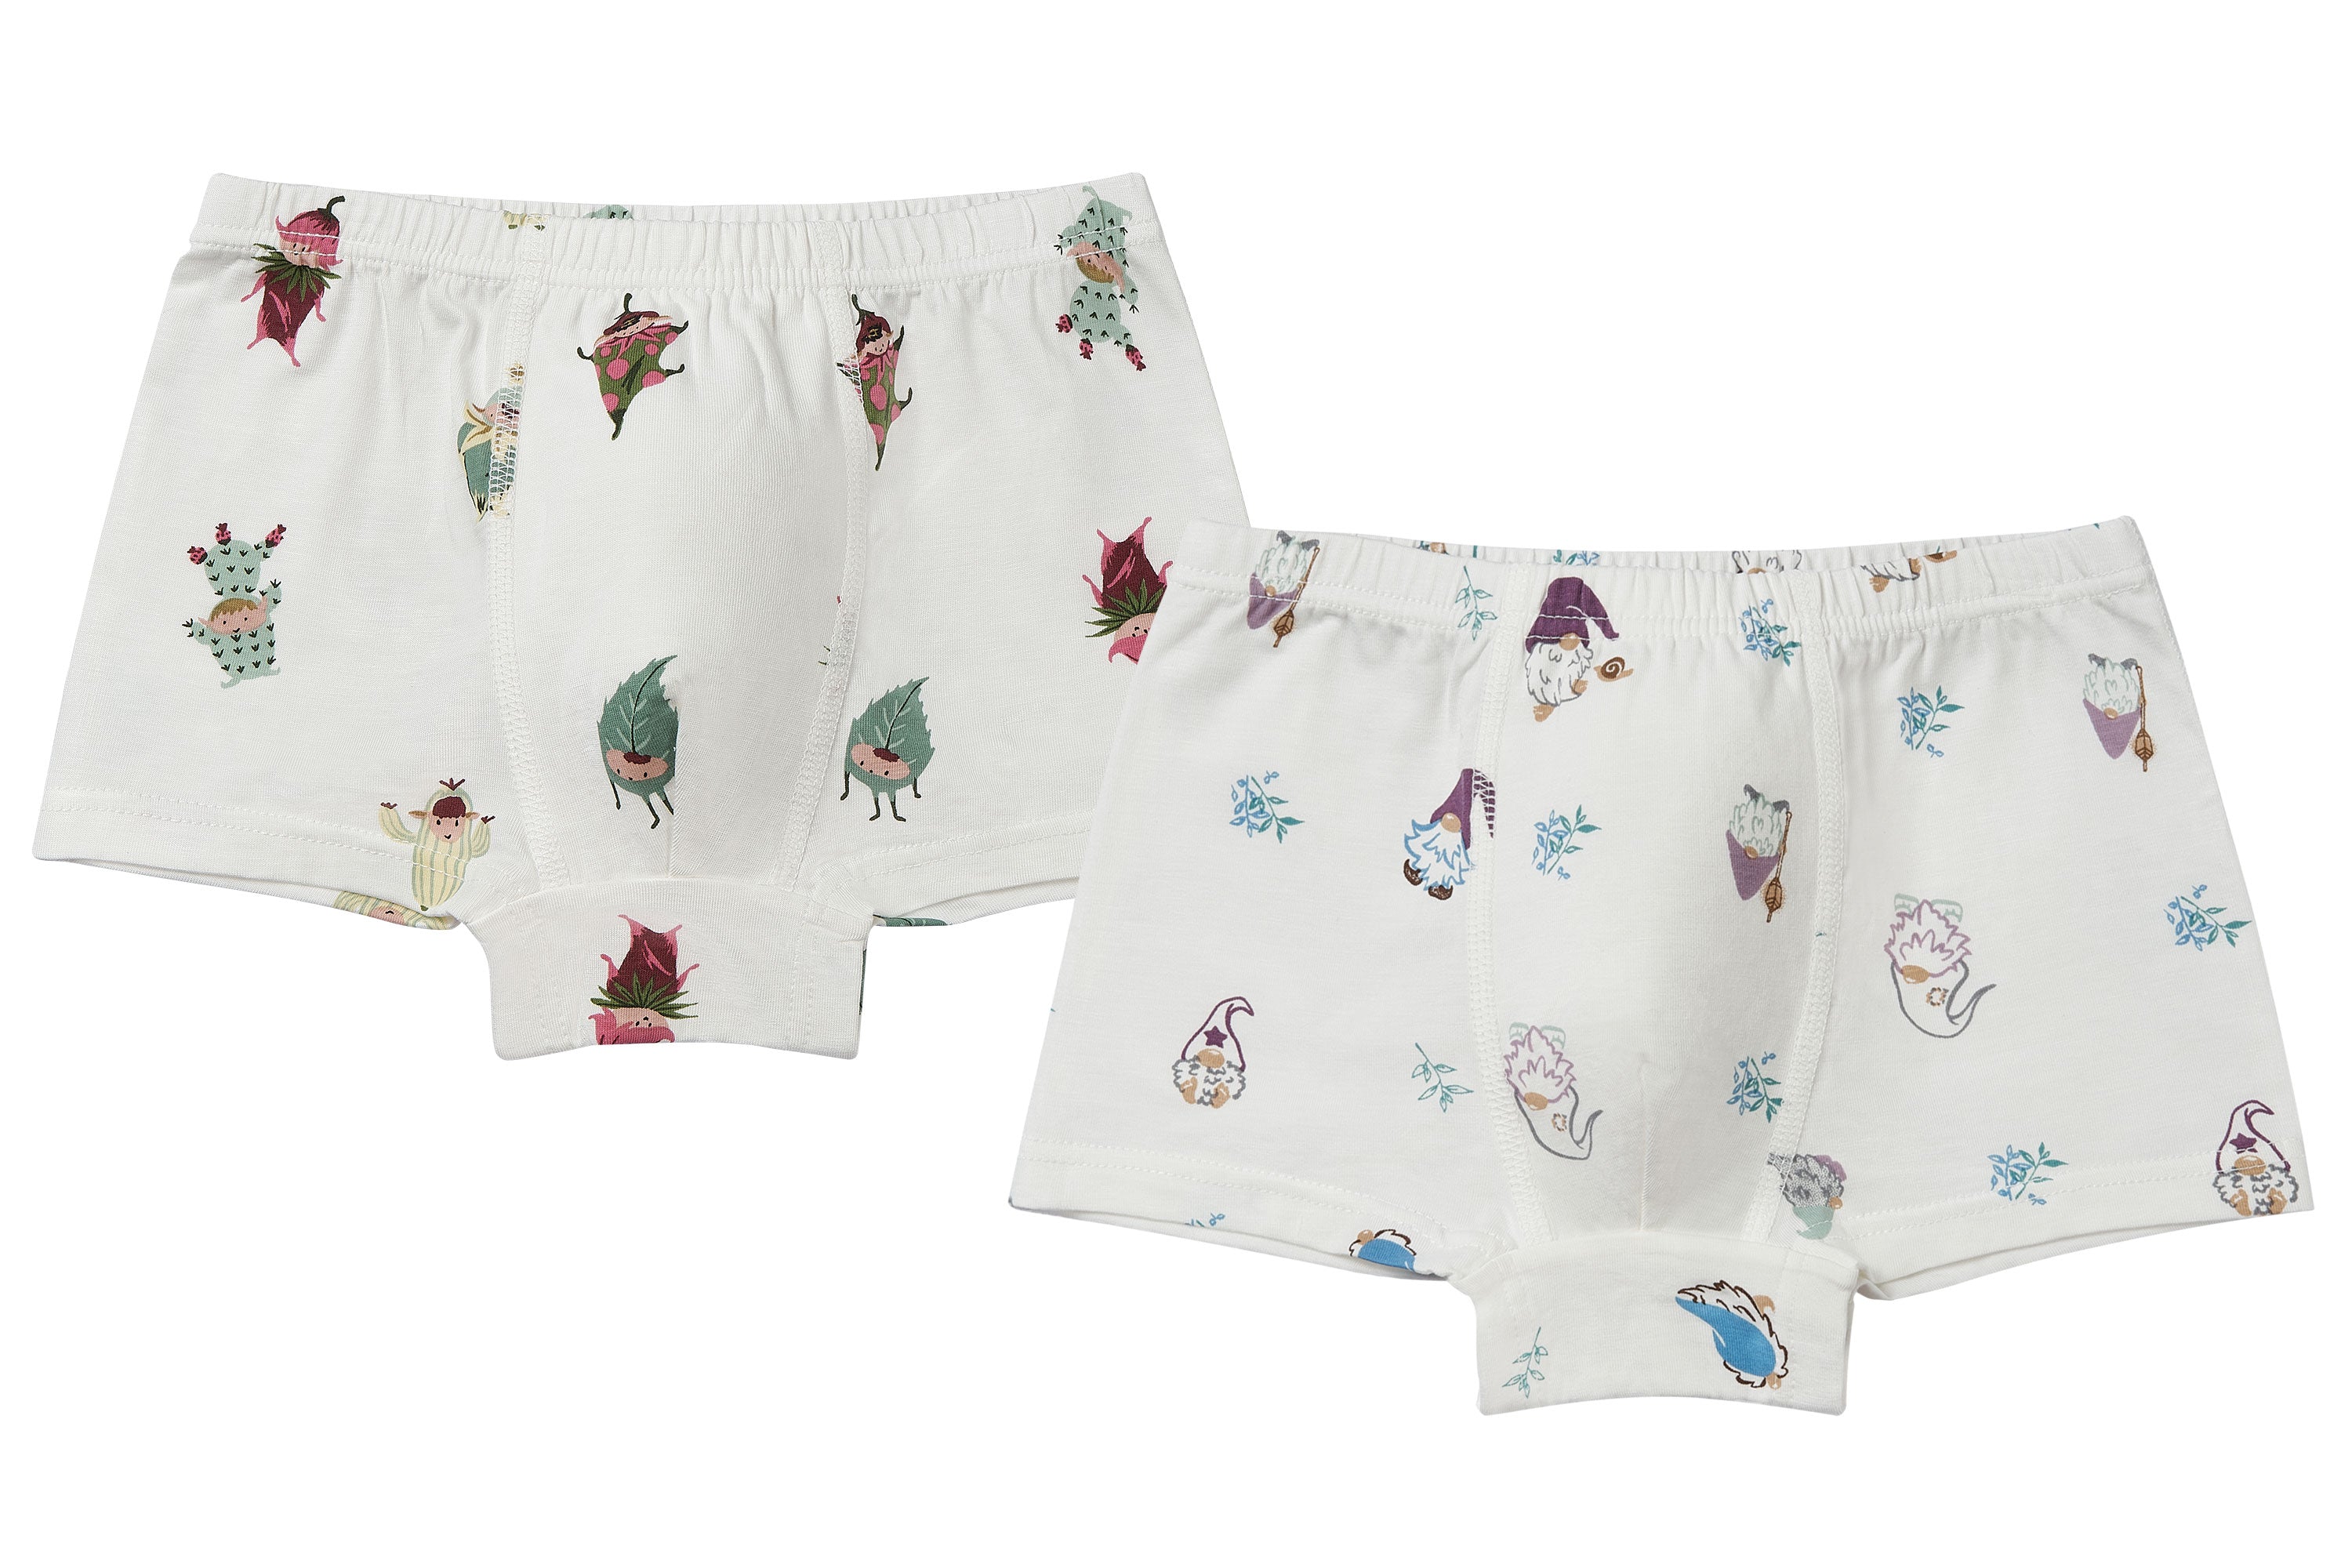 Toddler Boys Underwear - Nest Designs